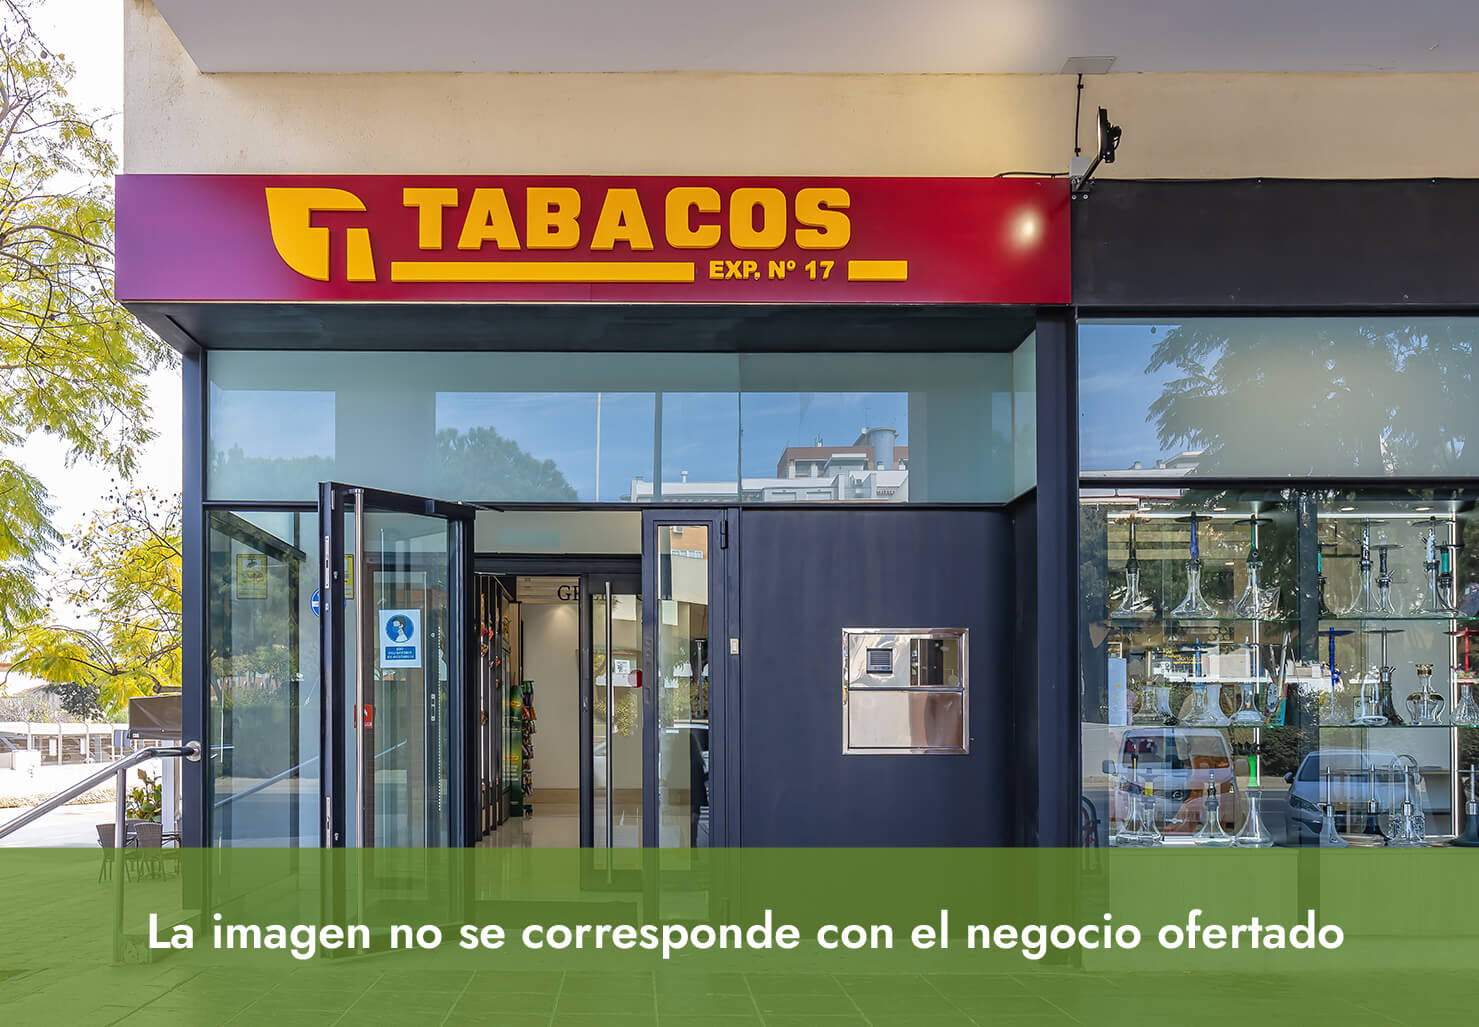 Lotoestanc, venta Expendeduría de Tabaco y Timbre situada en población de la Vega Baja